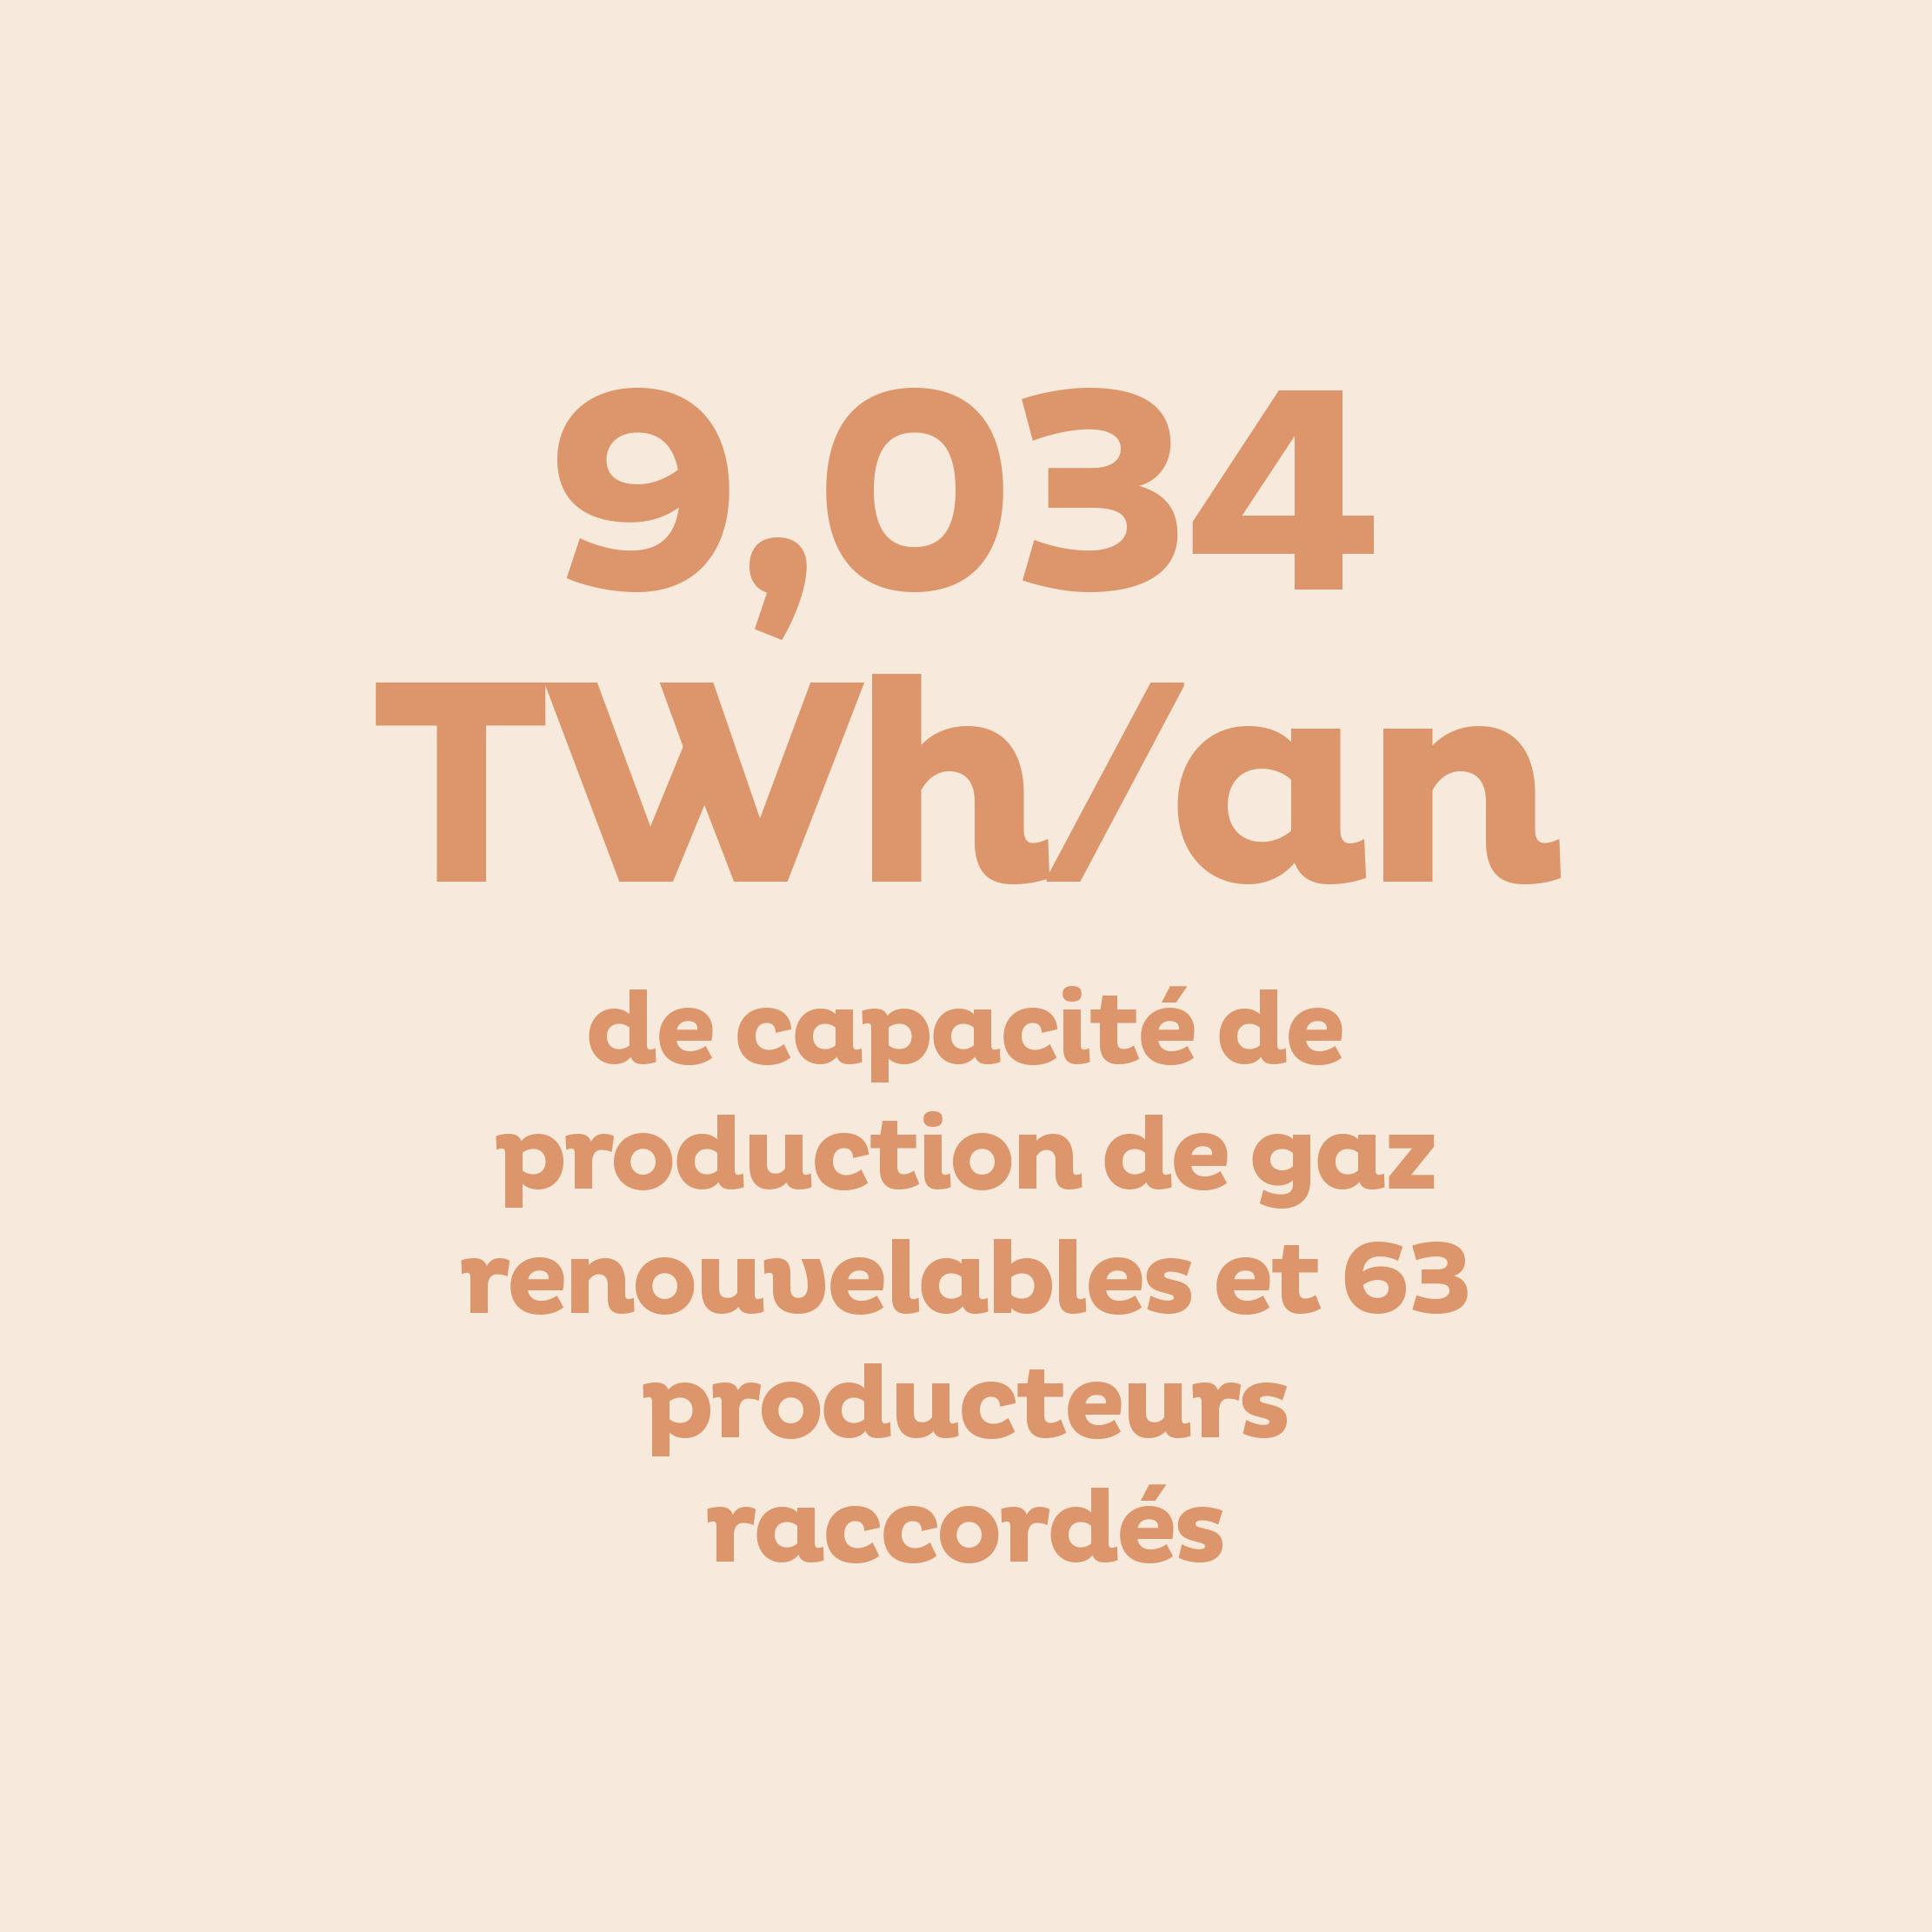 9,034 TWh/an de capacité de production de gaz renouvelables et 63 producteurs raccordés